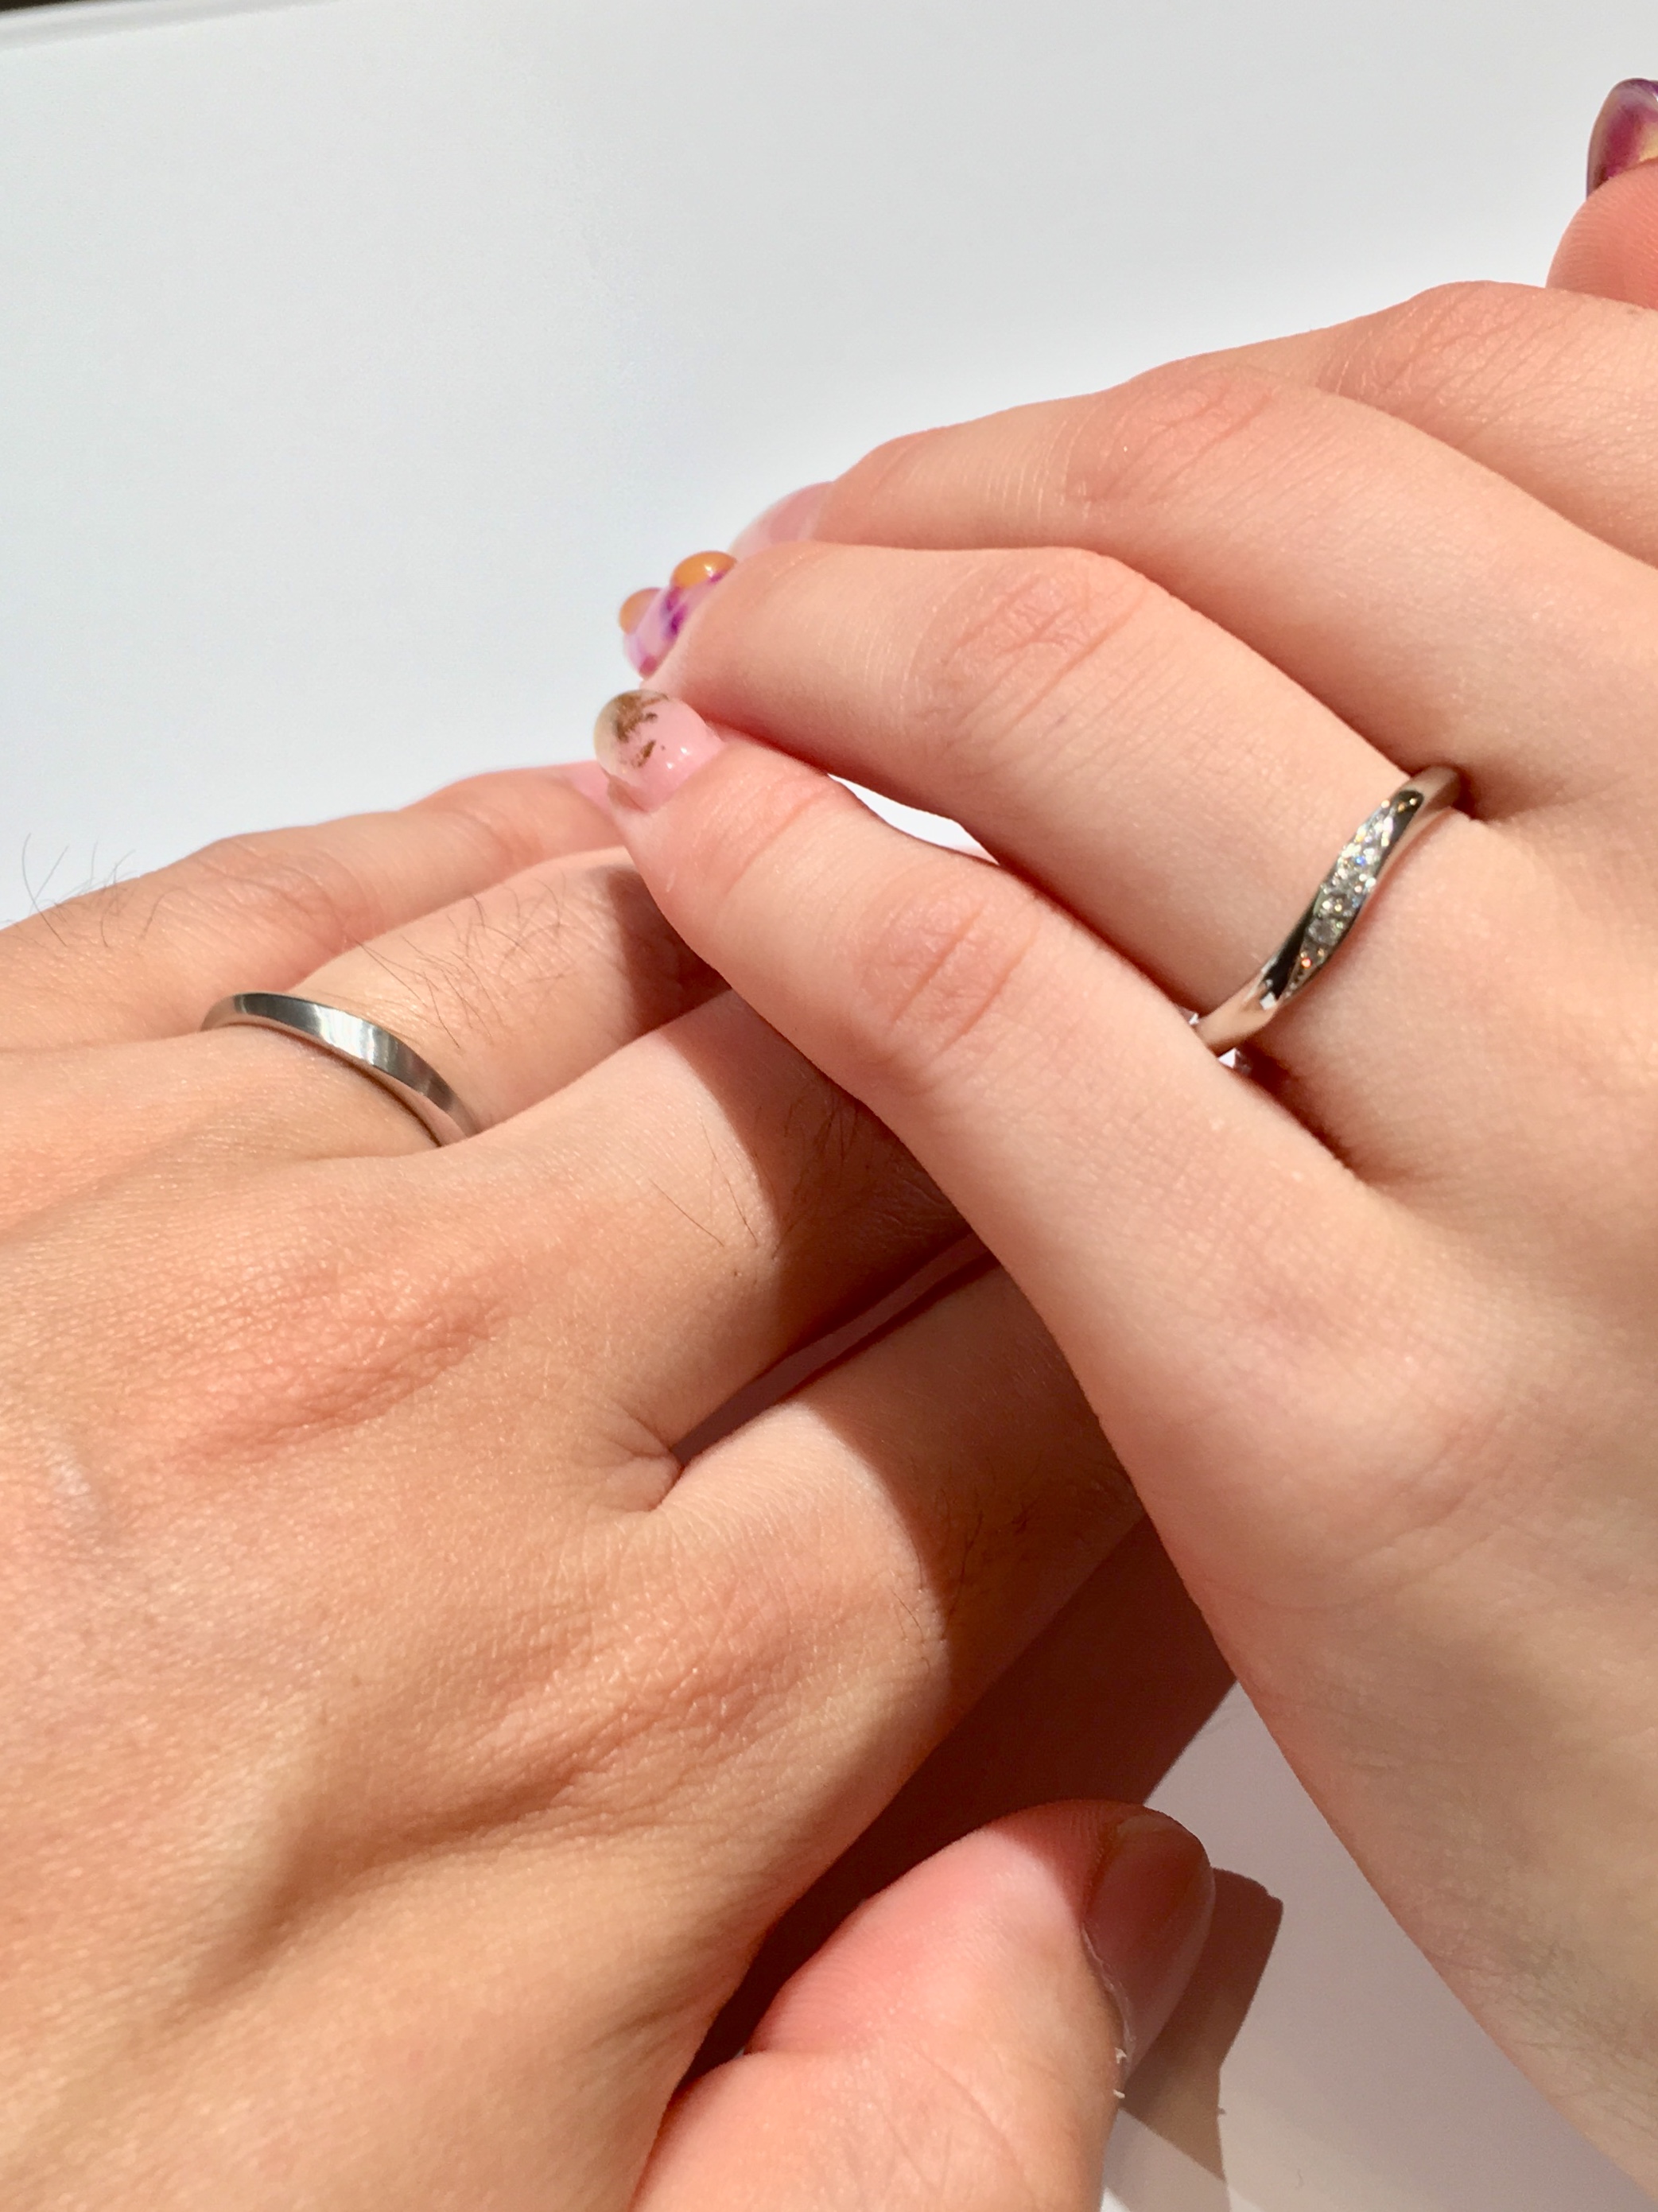 ウェーブ S字カーブ の結婚指輪 お気に入りリングを見つける３つの選び方 人気デザイン ブランド Isshindo Bridal Blog